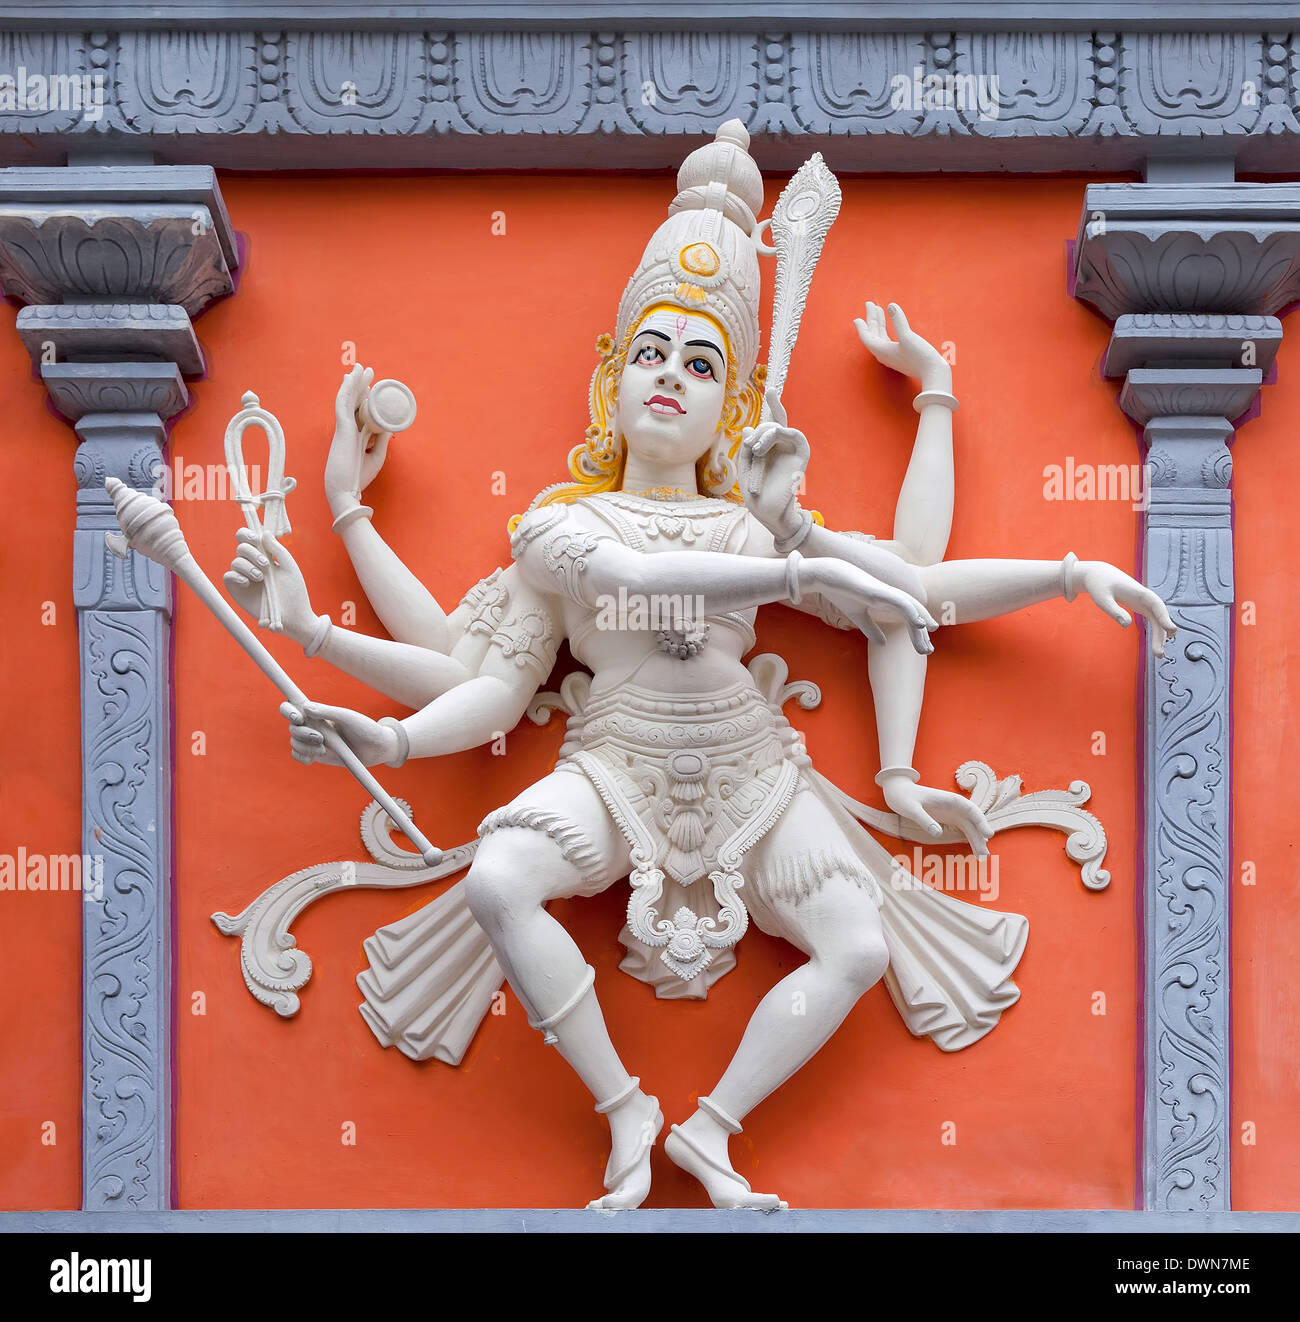 Nataraj Tanz Form von Lord Shiva Hindu Gott Orange und weiße Statue im Tempel außen Wandrelief Stockfoto